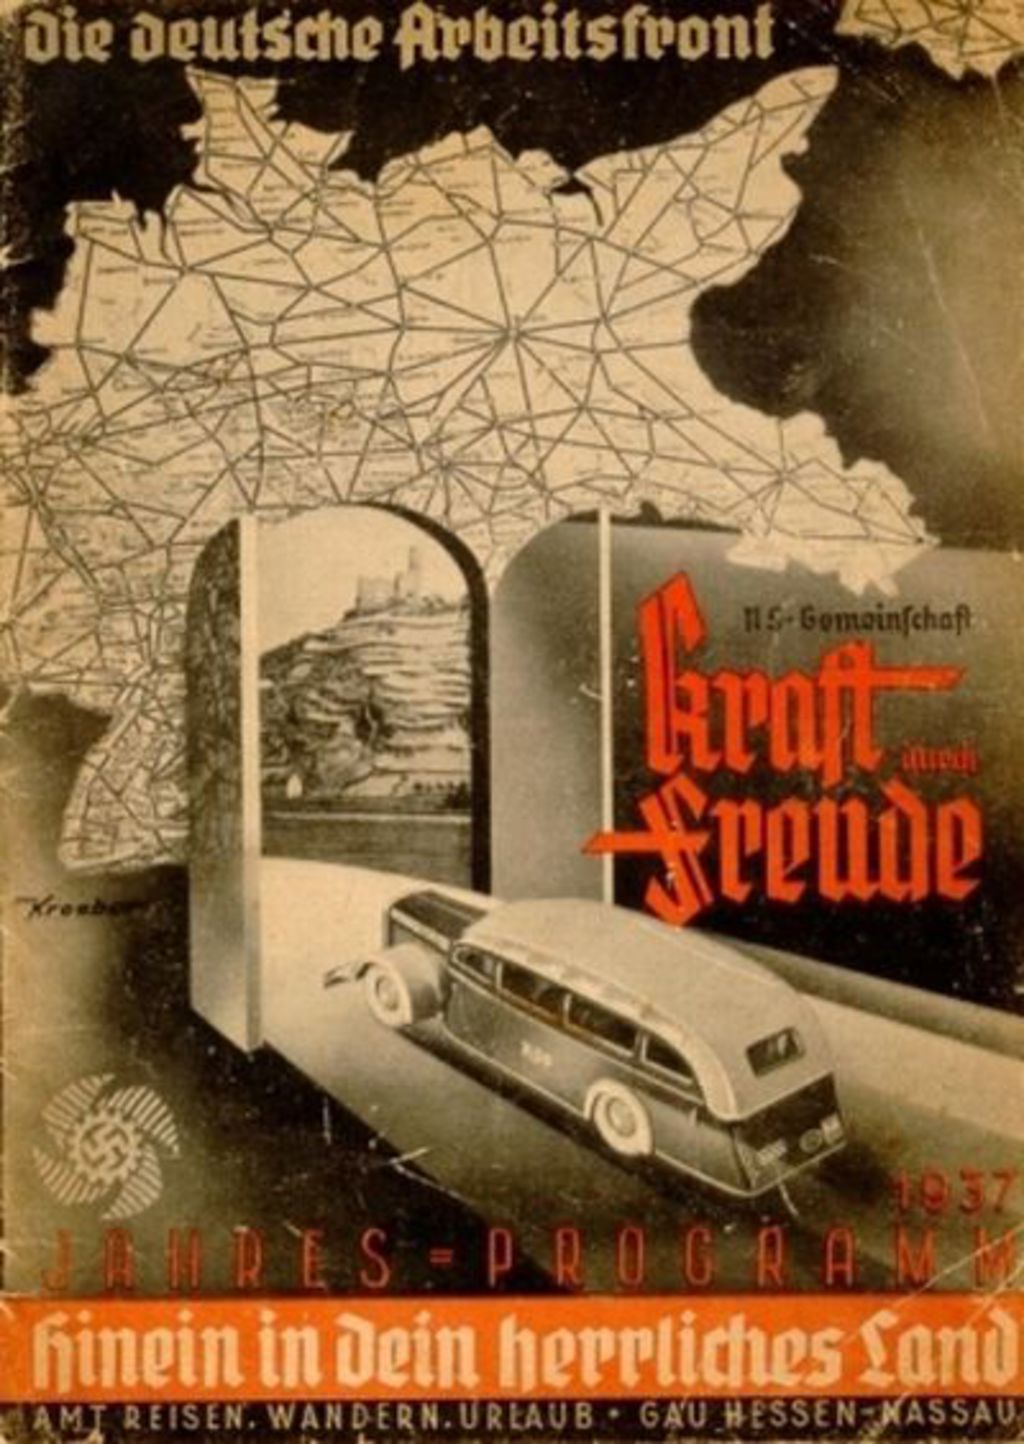 Broschüre: Jahresprogramm der NS-Gemeinschaft "Kraft durch Freude", 1937